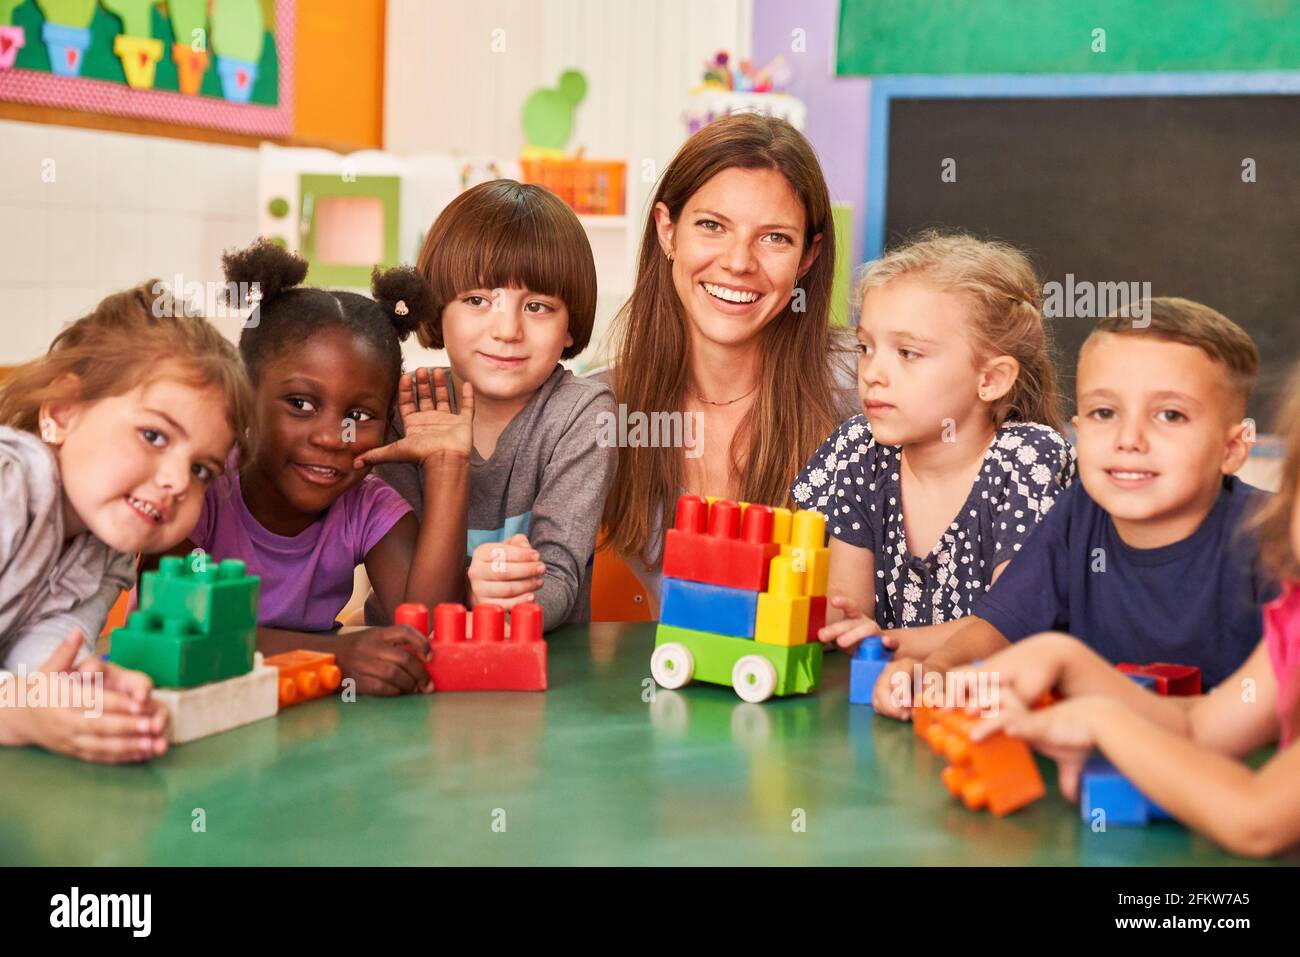 Group of happy children in international kindergarten with kindergarten teacher and building blocks Stock Photo